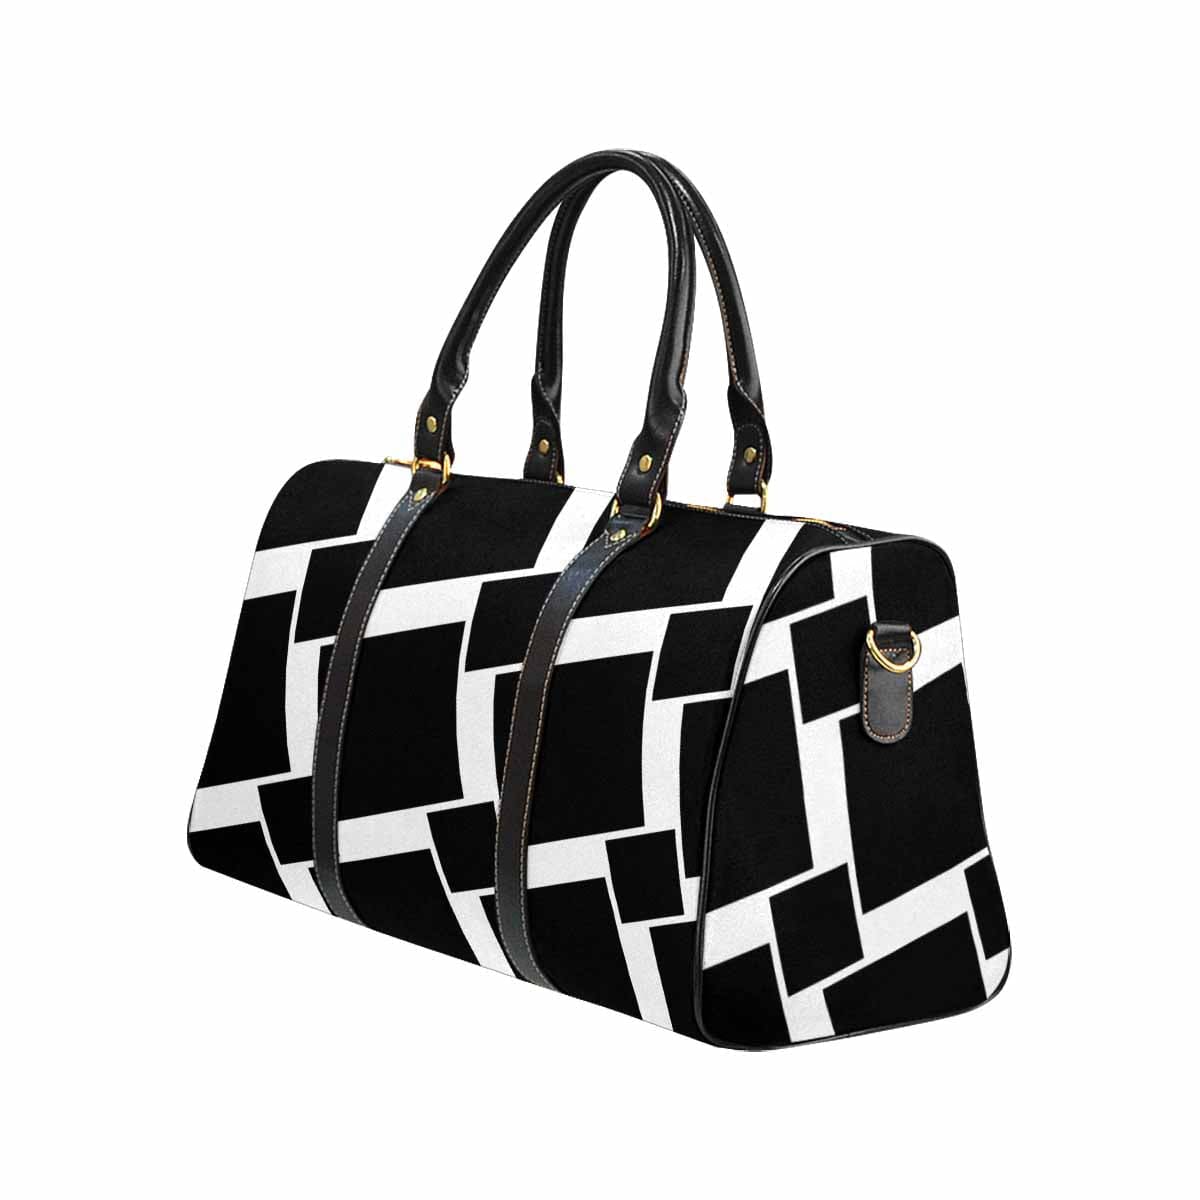 Travel Bag Adjustable Shoulder Strap Carry On Bag Black - Bags | Travel Bags